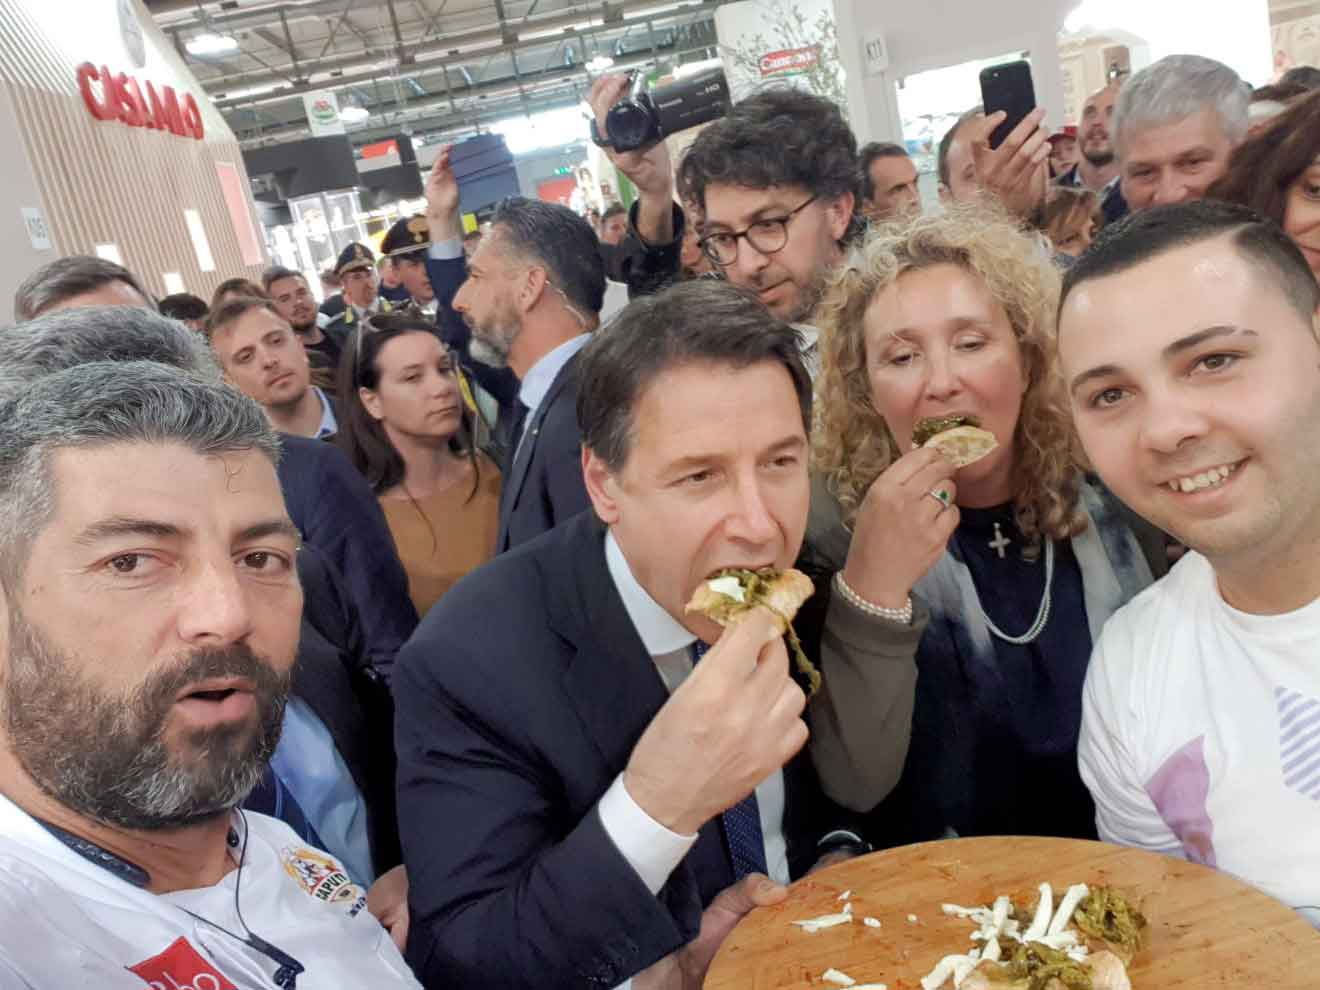 Che successo per il pizzaiolo Fabio Cristiano: il premier Conte si gusta la pizza targata da Gennaro